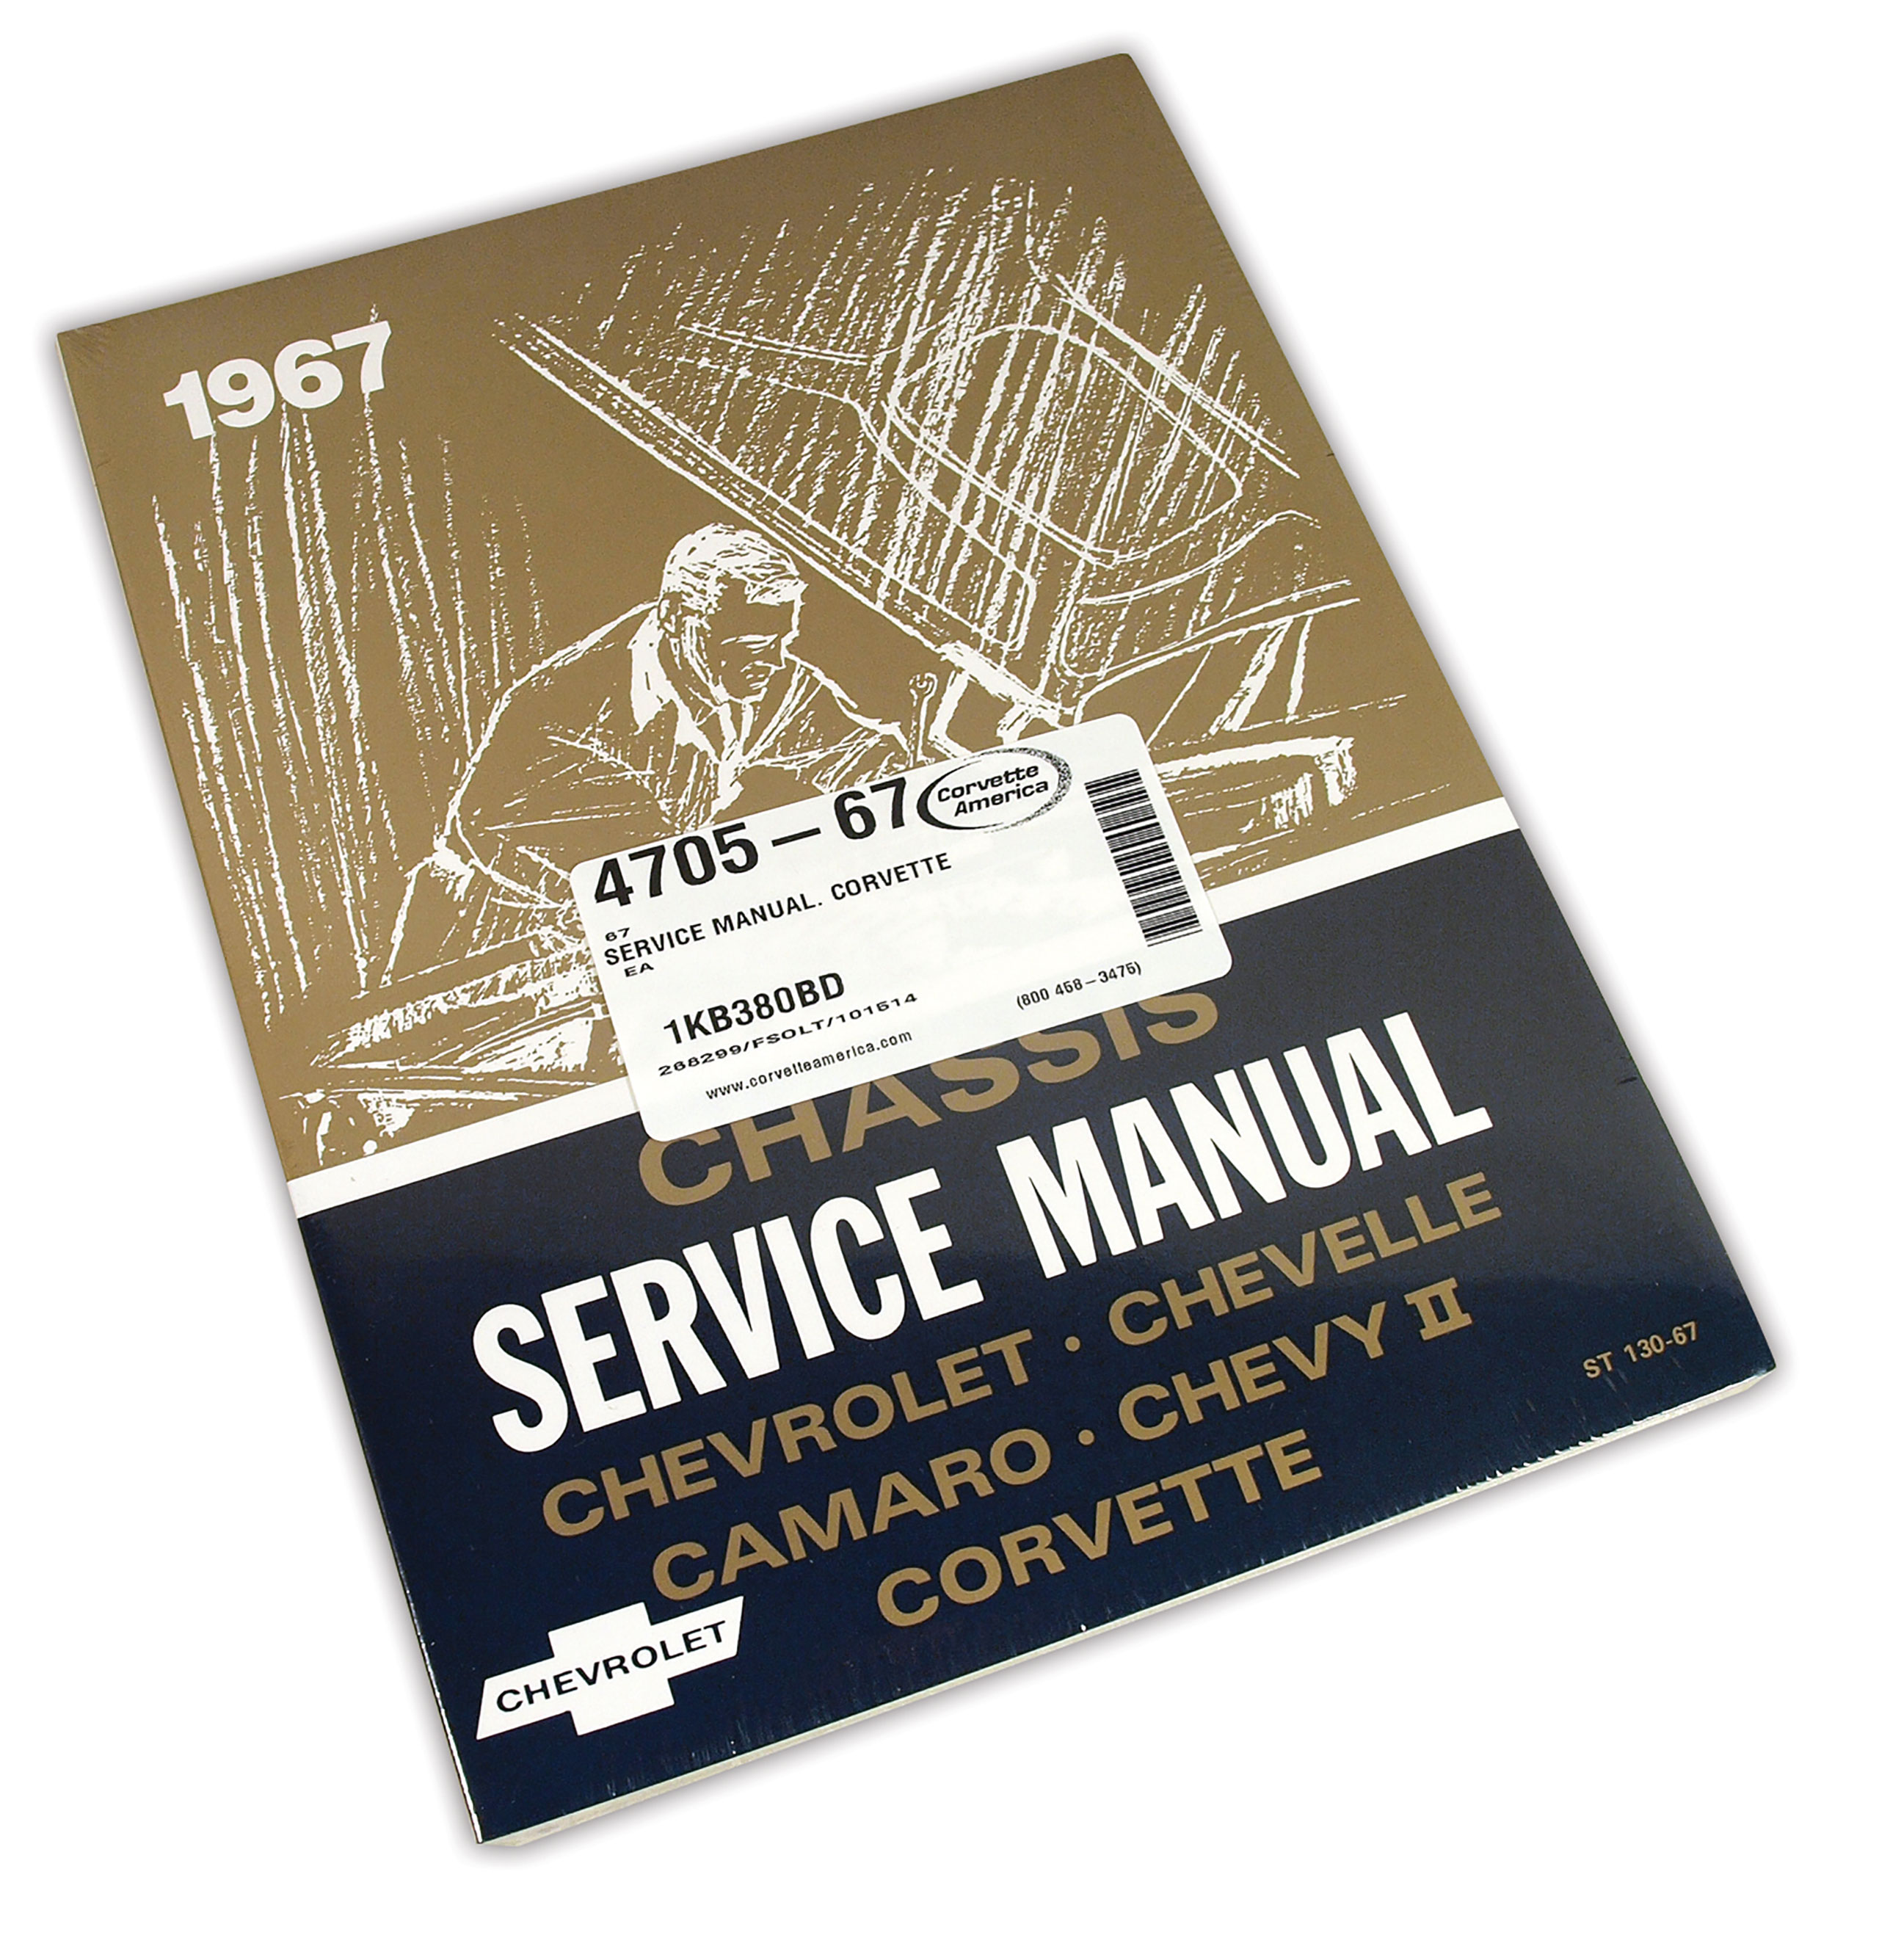 C2 1967 Chevrolet Corvette Service Manual. Corvette - Auto Accessories of America